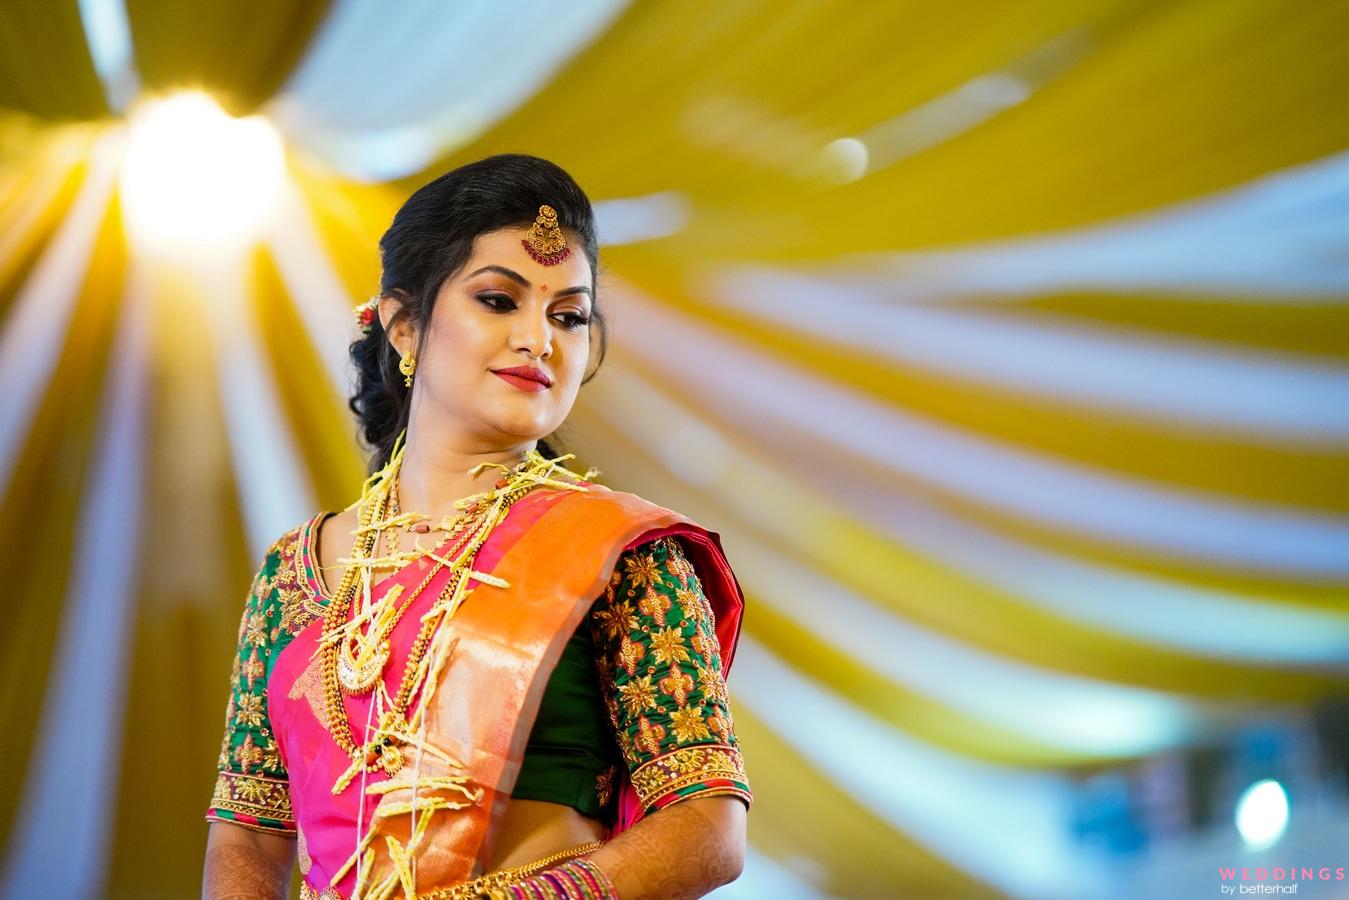 40+ Stylish Maharashtrian Bridal Looks That We Have A Crush On! | Marathi  bride, Indian wedding couple photography, Indian wedding photography poses